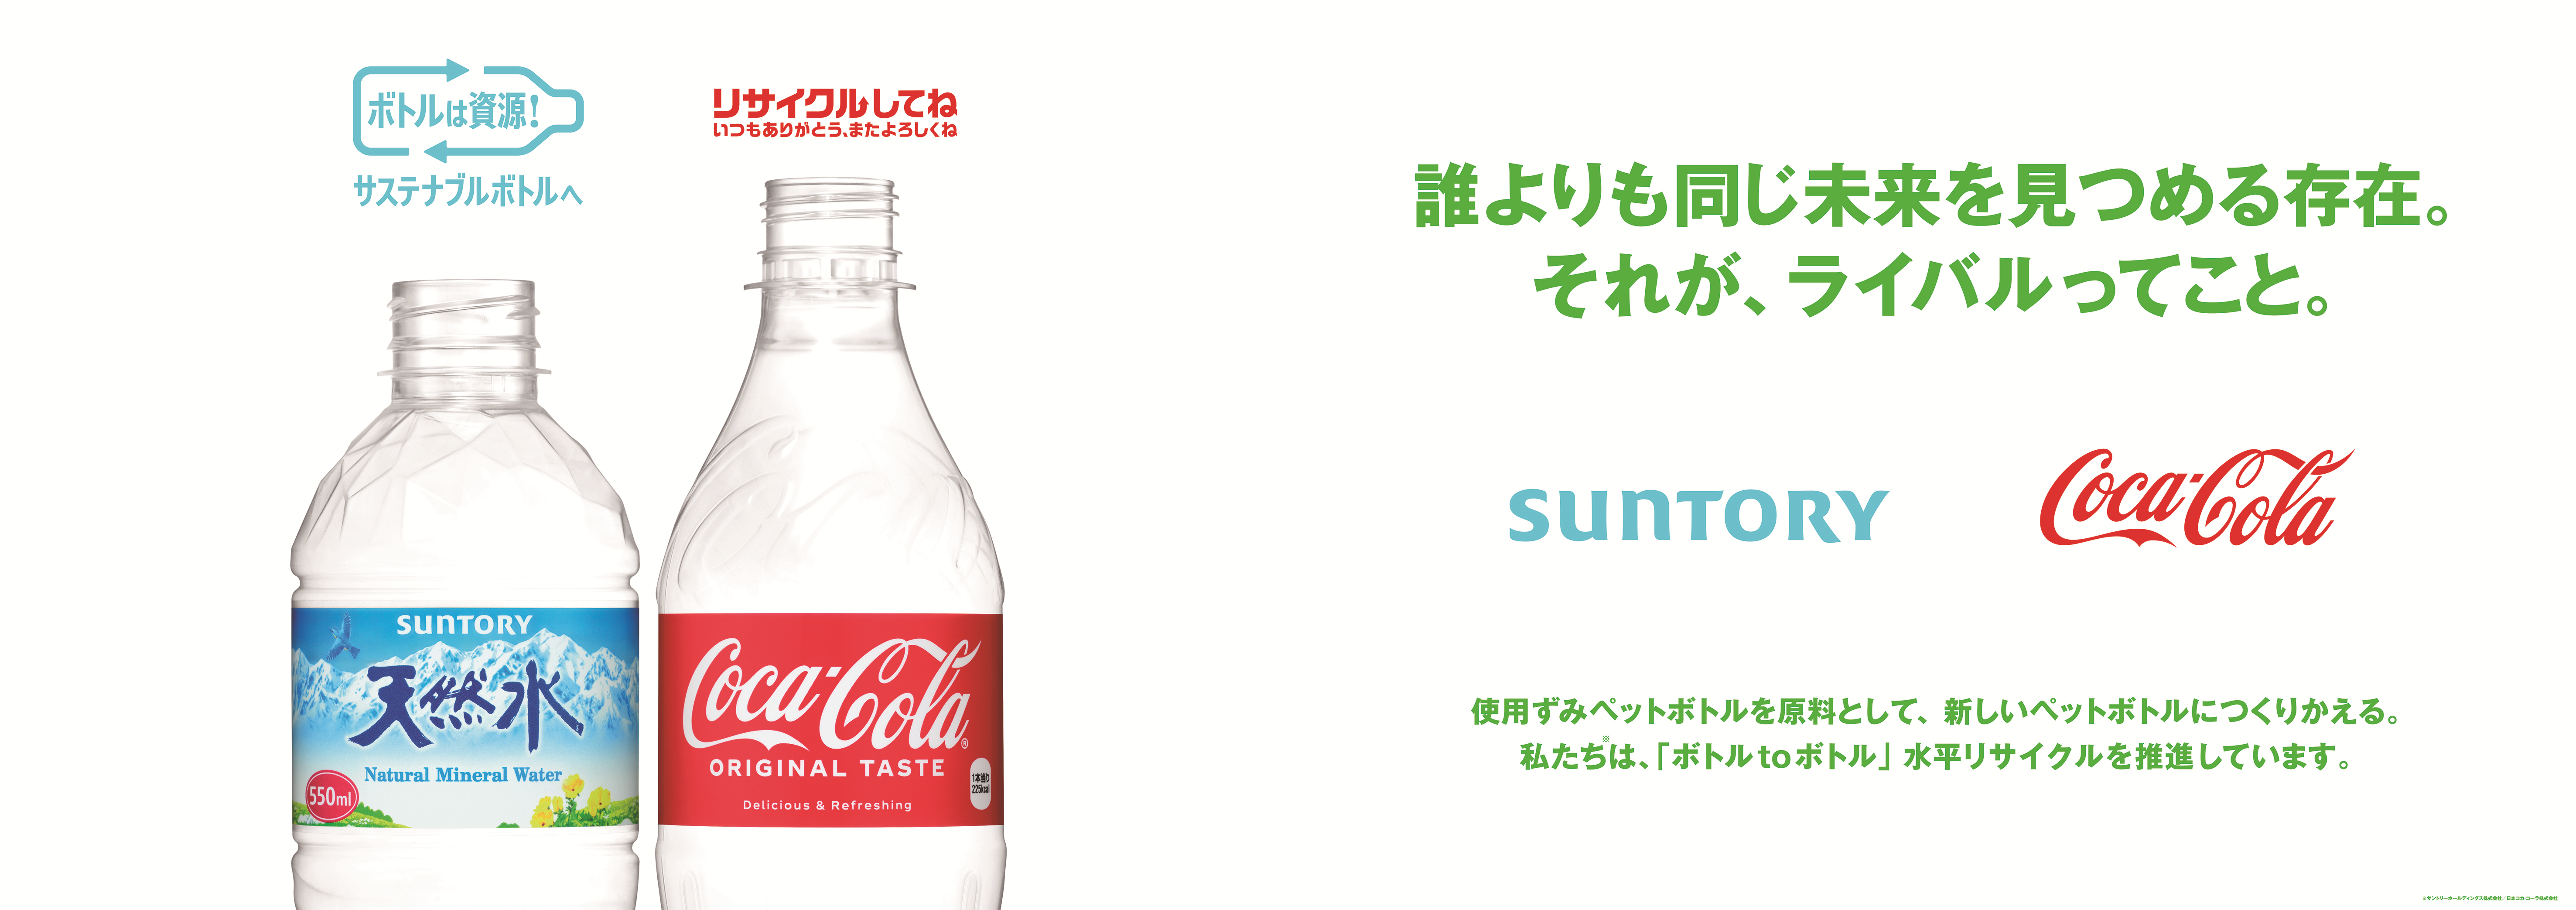 コカ・コーラとサントリー、「ボトルtoボトル」水平リサイクルの 啓発 